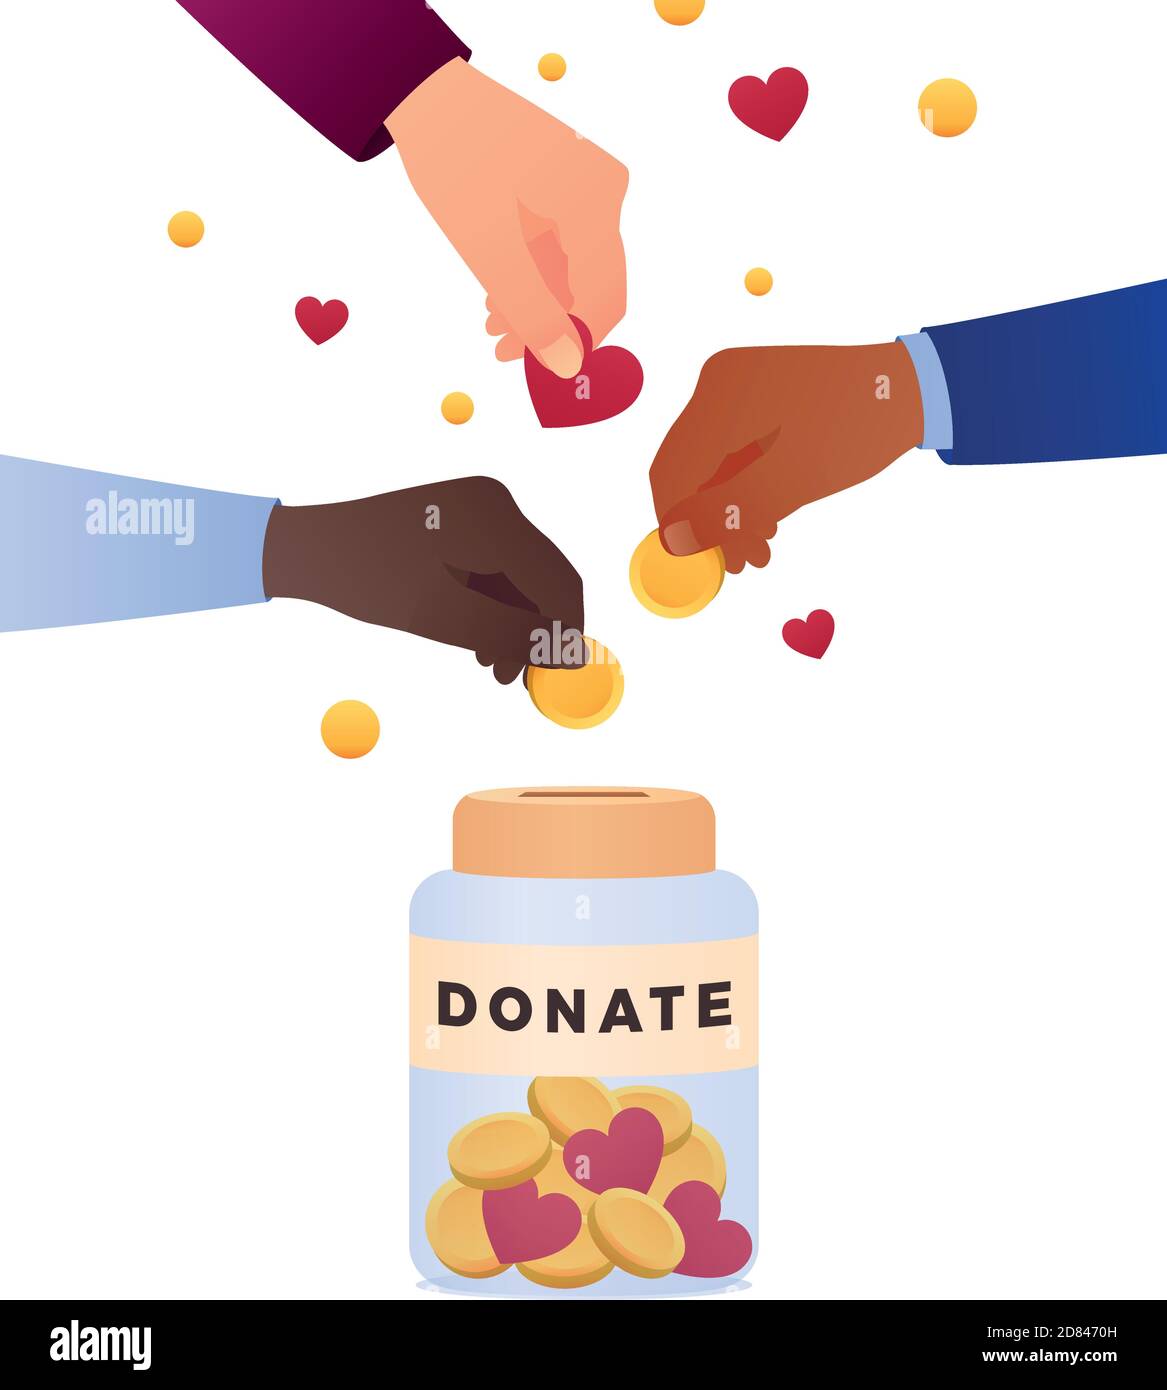 Die Menschen werfen Goldmünzen und Herzen in eine Schachtel für Spenden. Münzen und Herzen in der Hand. Spendenbox. Spenden, Geld geben. Moderne Vektorgrafik, Stock Vektor